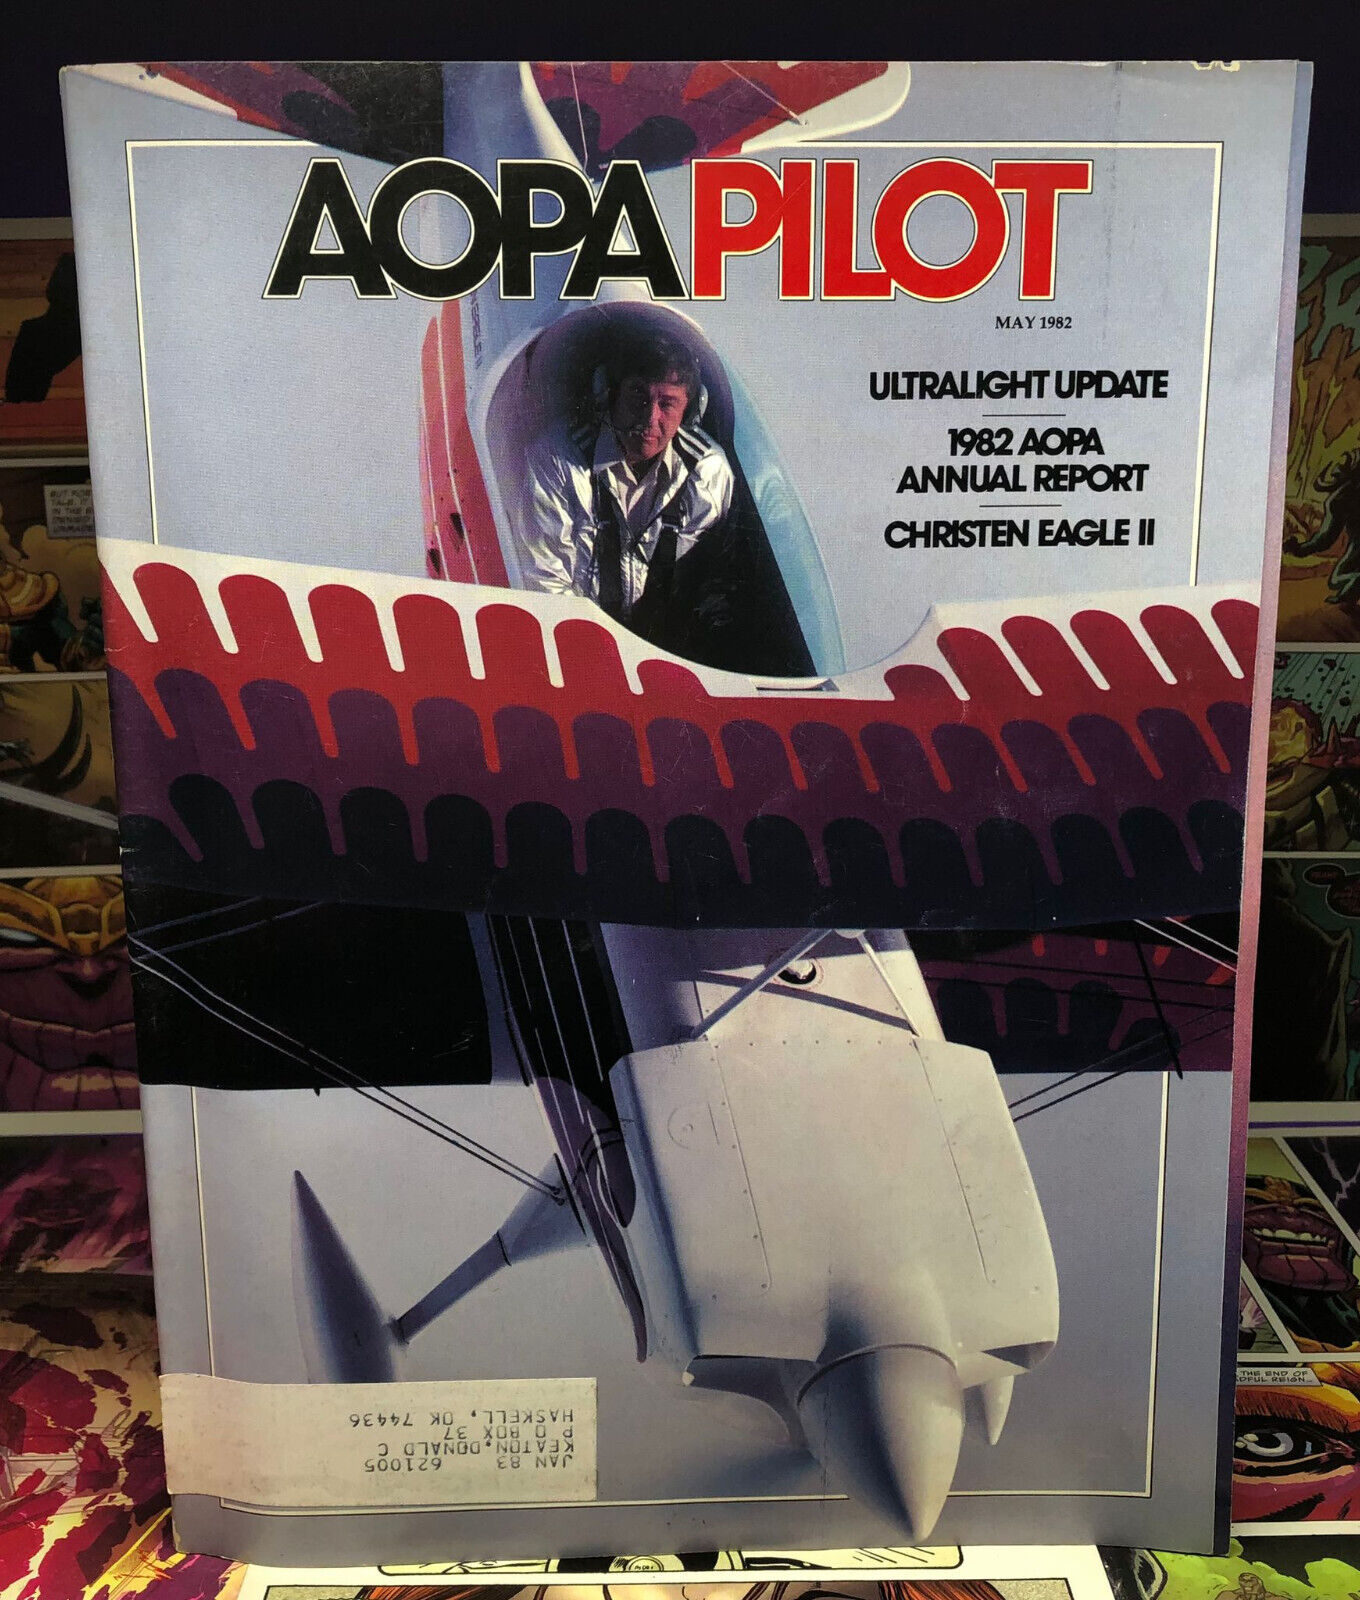 Aopa Pilot Magazine - May 1982, Ultralight Update, Christen Eagle II